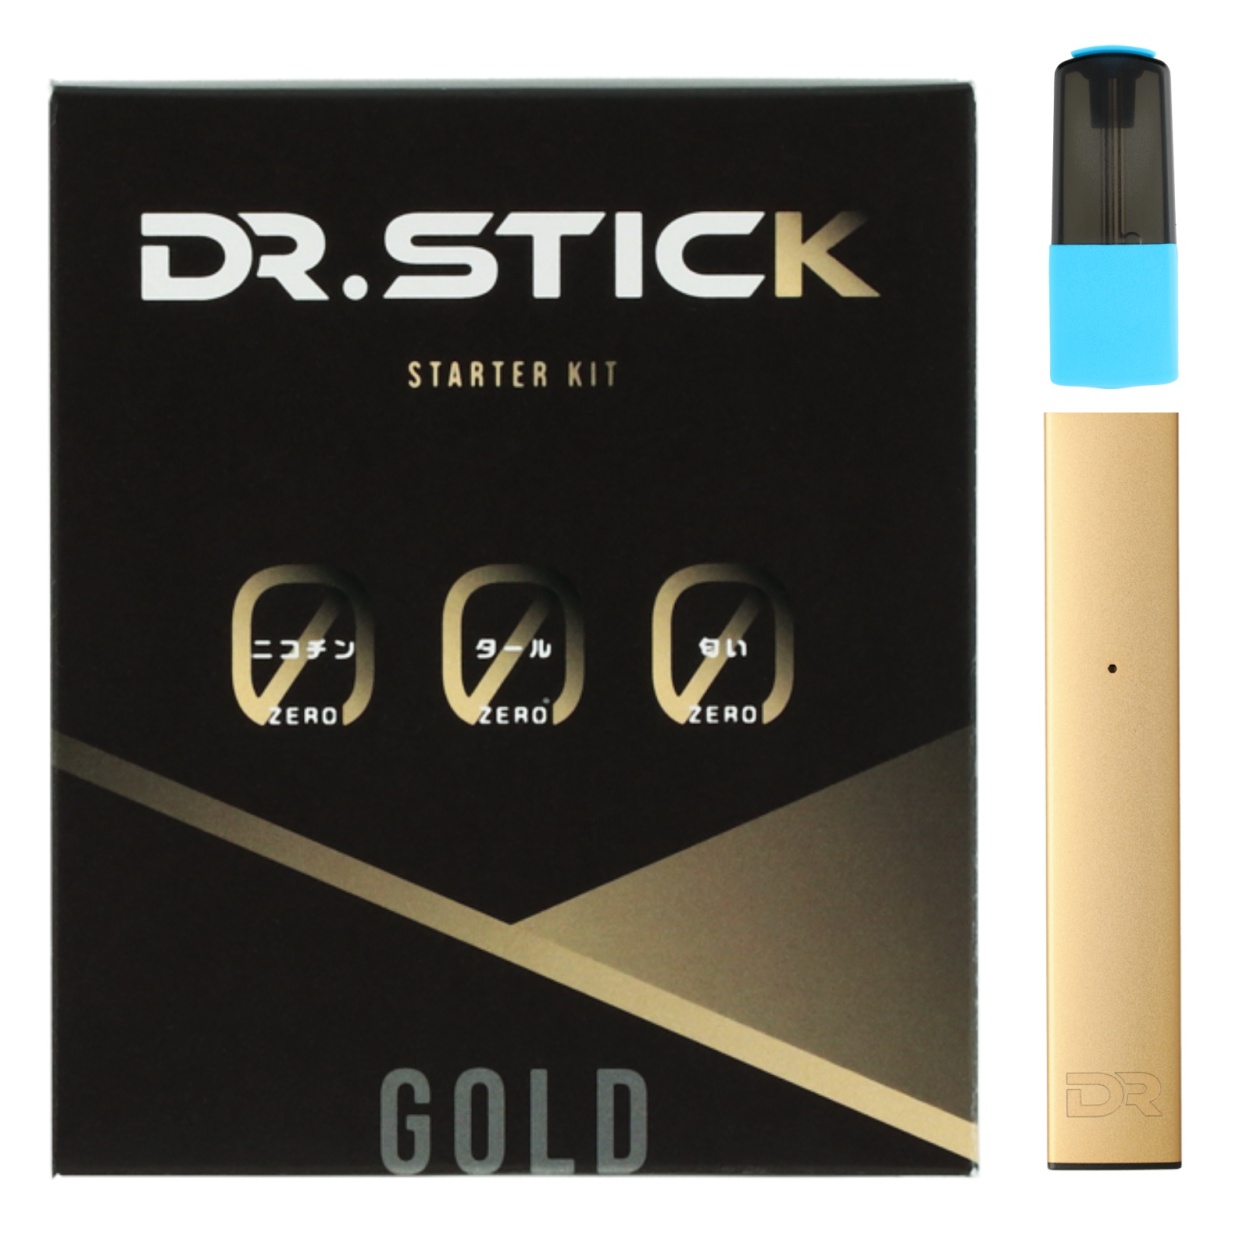 ドクタースティック DR.STICK 電子タバコ リキッド5個 選べる4種類 